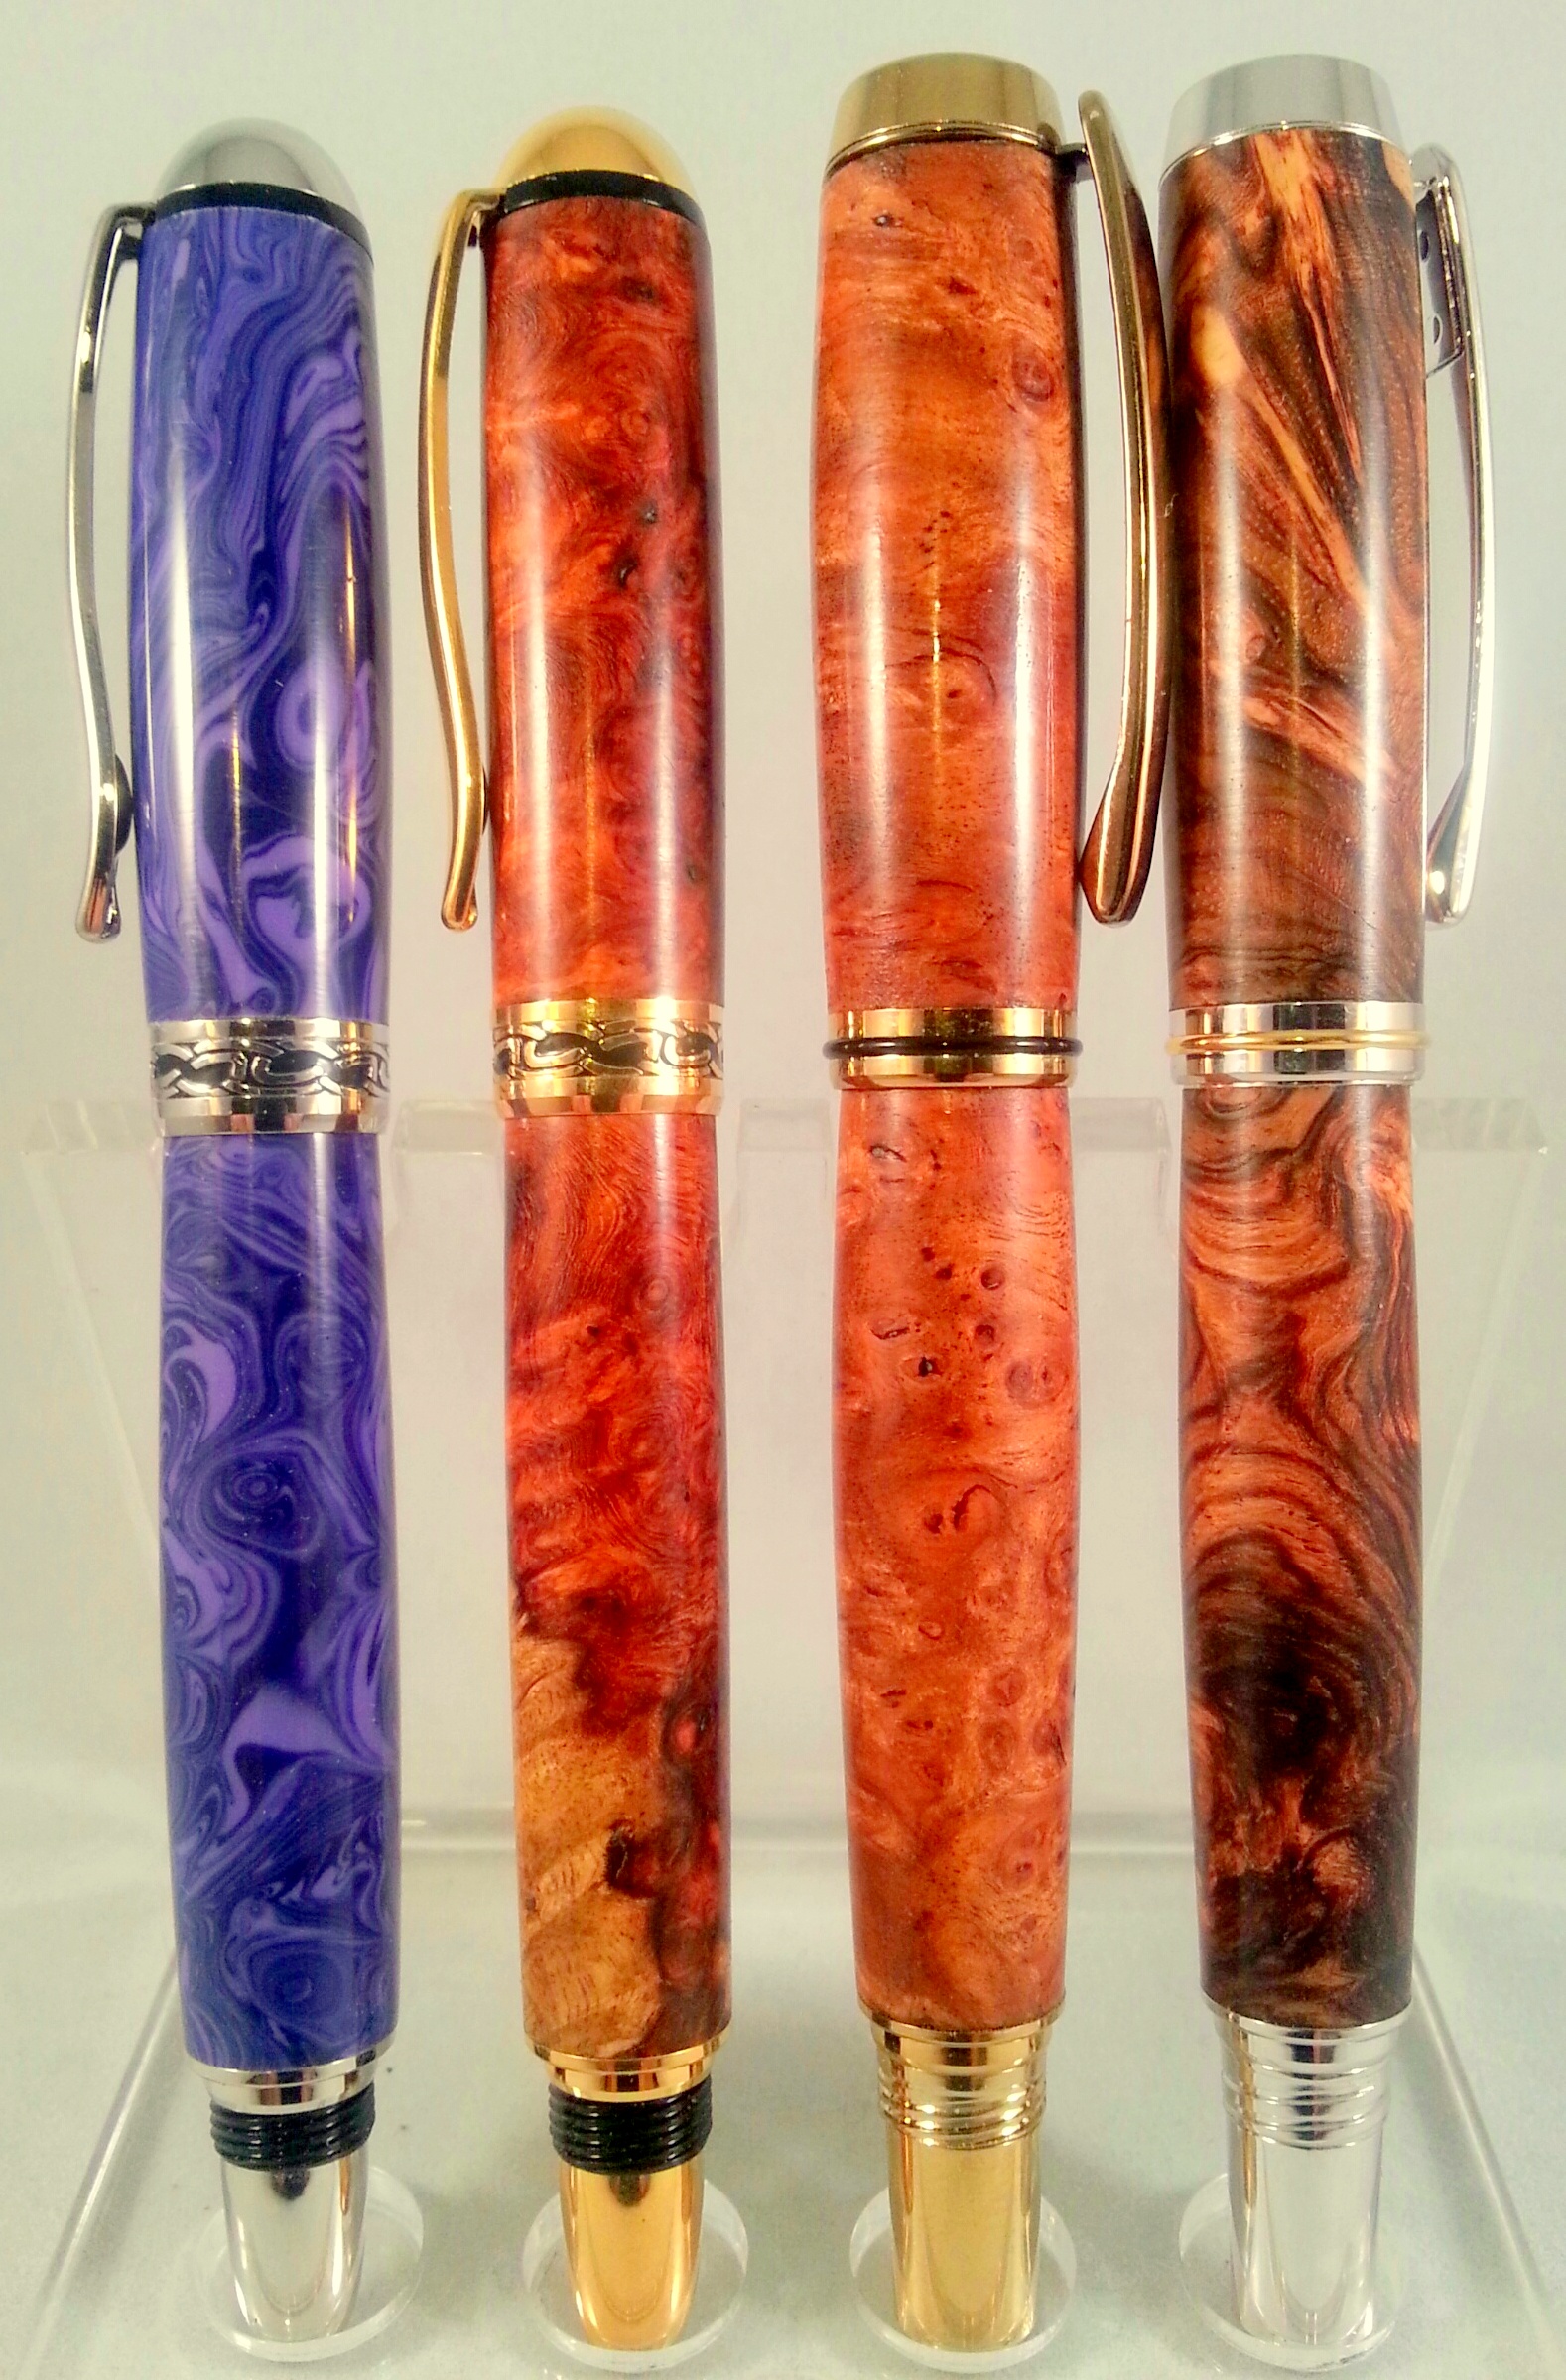 TruStone of Sedona & Some Very Burly Pens...